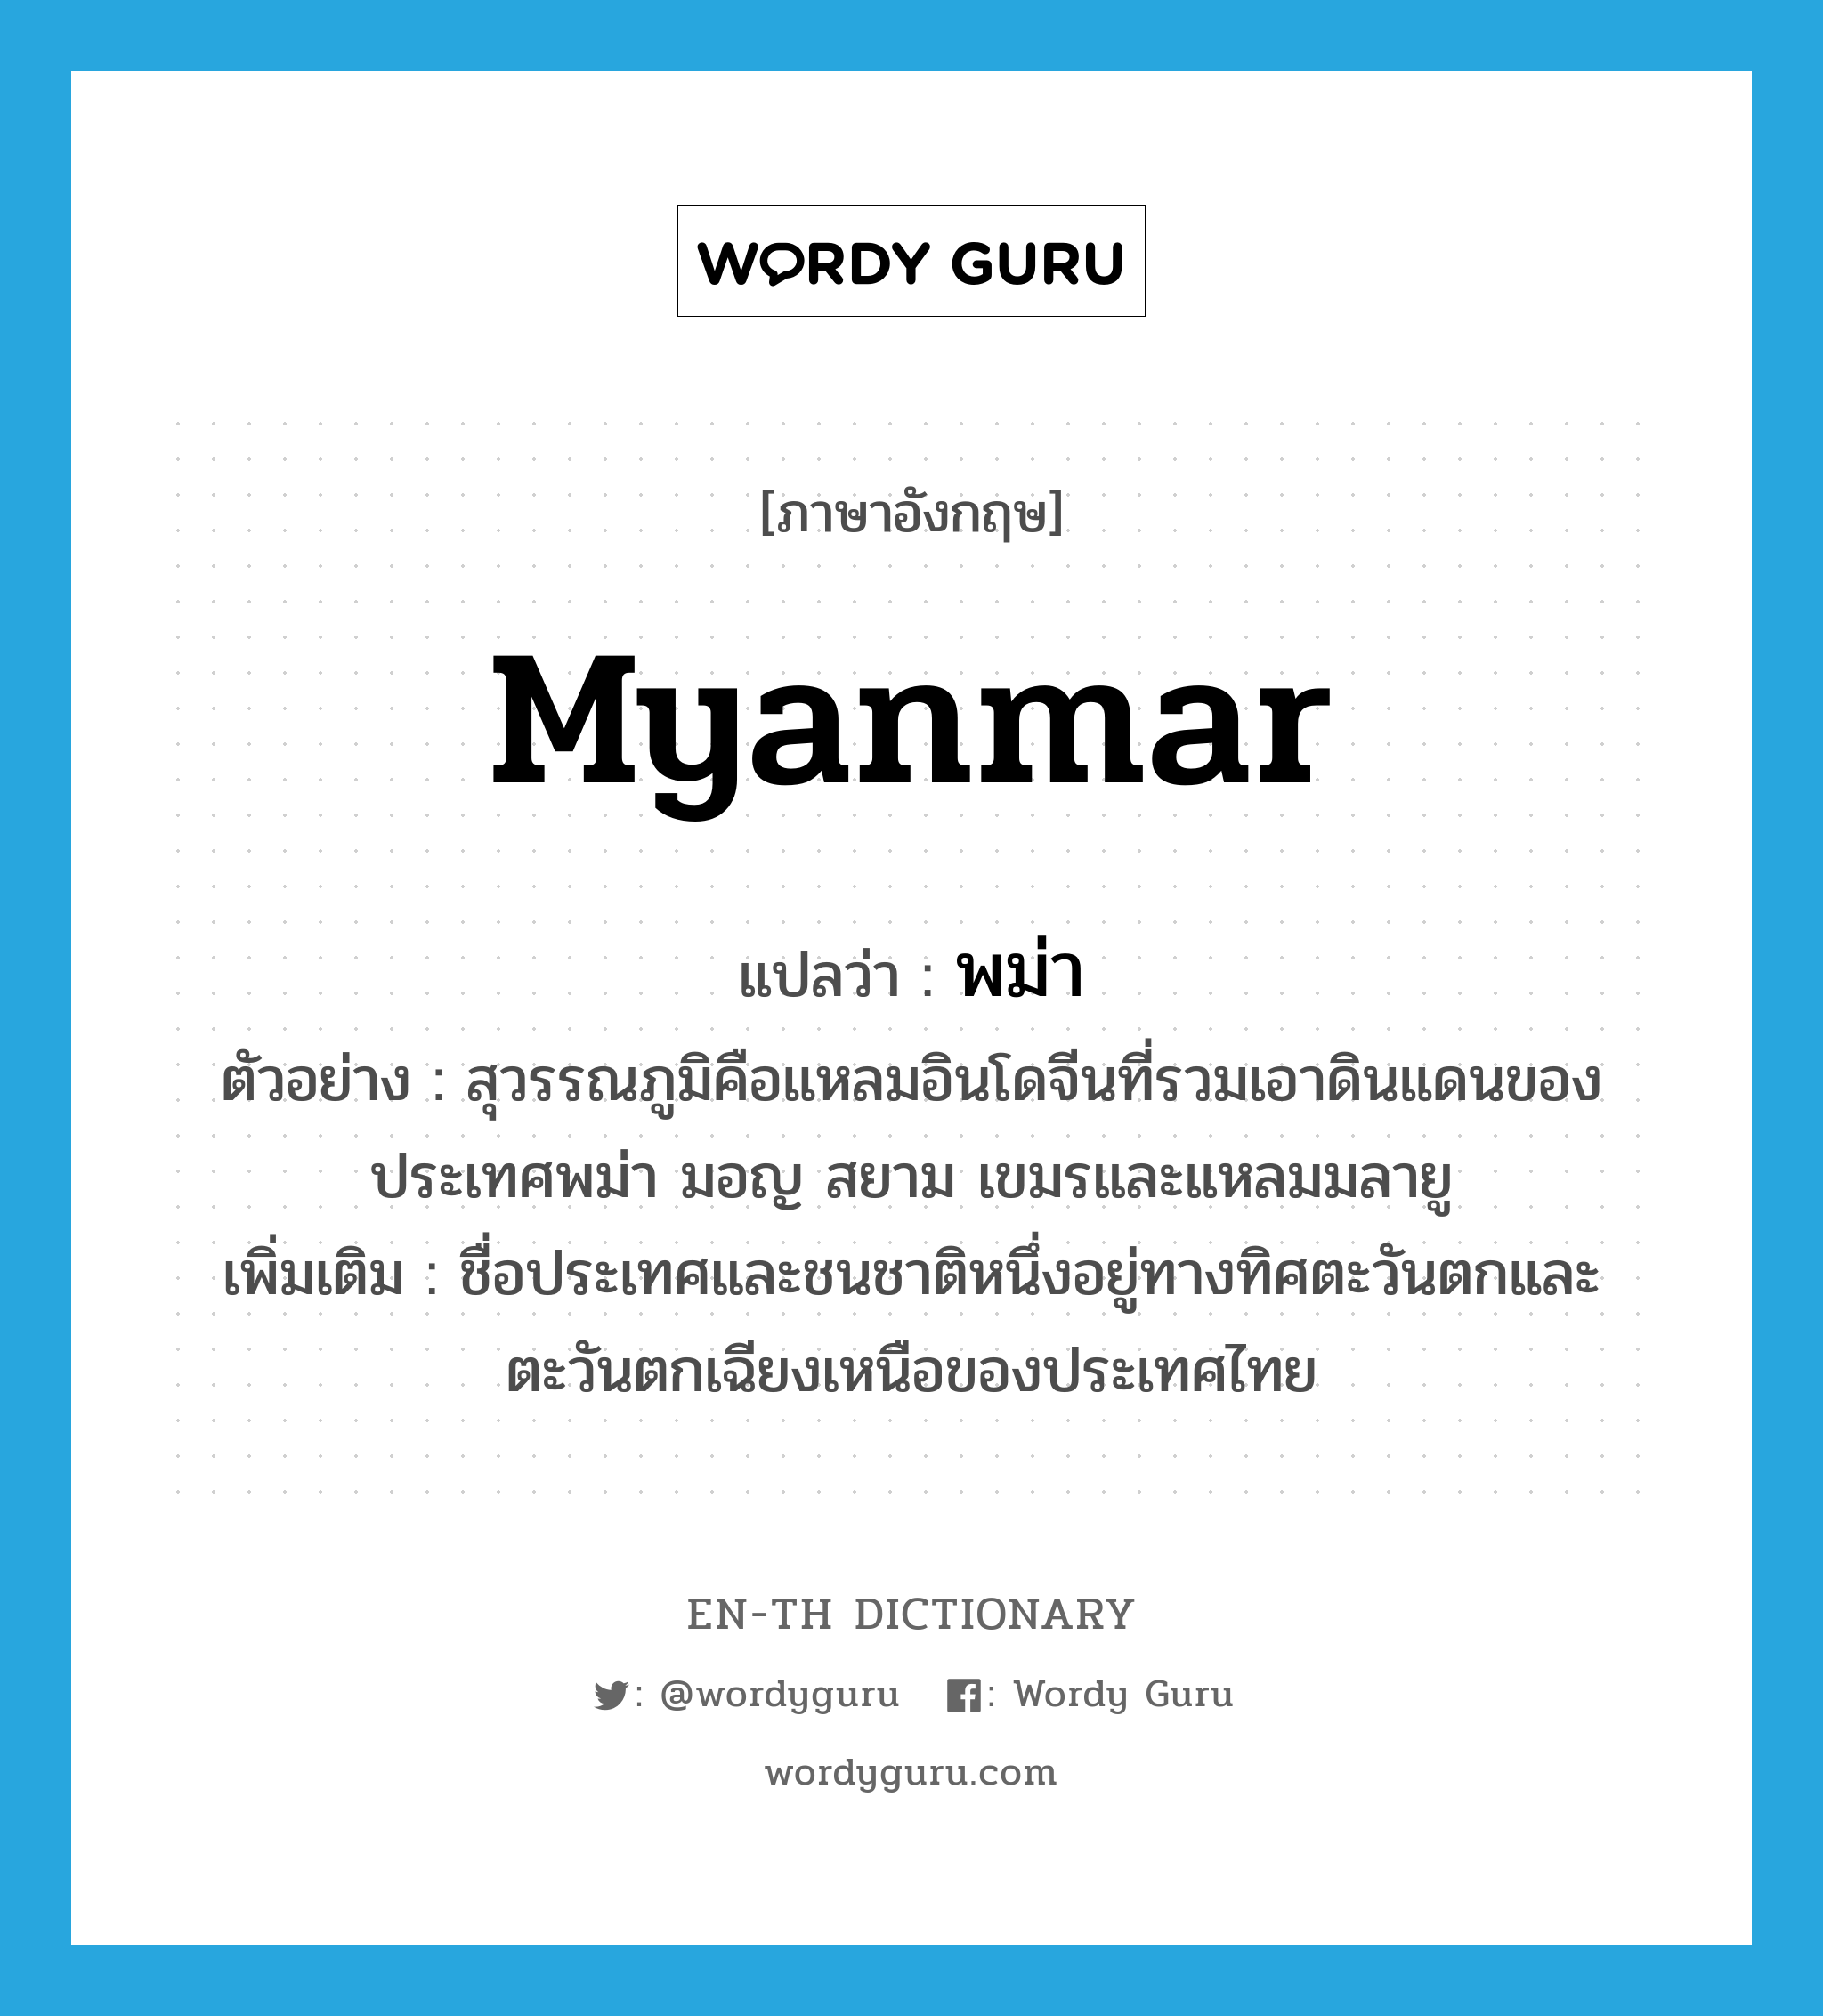 พม่า ภาษาอังกฤษ?, คำศัพท์ภาษาอังกฤษ พม่า แปลว่า Myanmar ประเภท N ตัวอย่าง สุวรรณภูมิคือแหลมอินโดจีนที่รวมเอาดินแดนของประเทศพม่า มอญ สยาม เขมรและแหลมมลายู เพิ่มเติม ชื่อประเทศและชนชาติหนึ่งอยู่ทางทิศตะวันตกและตะวันตกเฉียงเหนือของประเทศไทย หมวด N